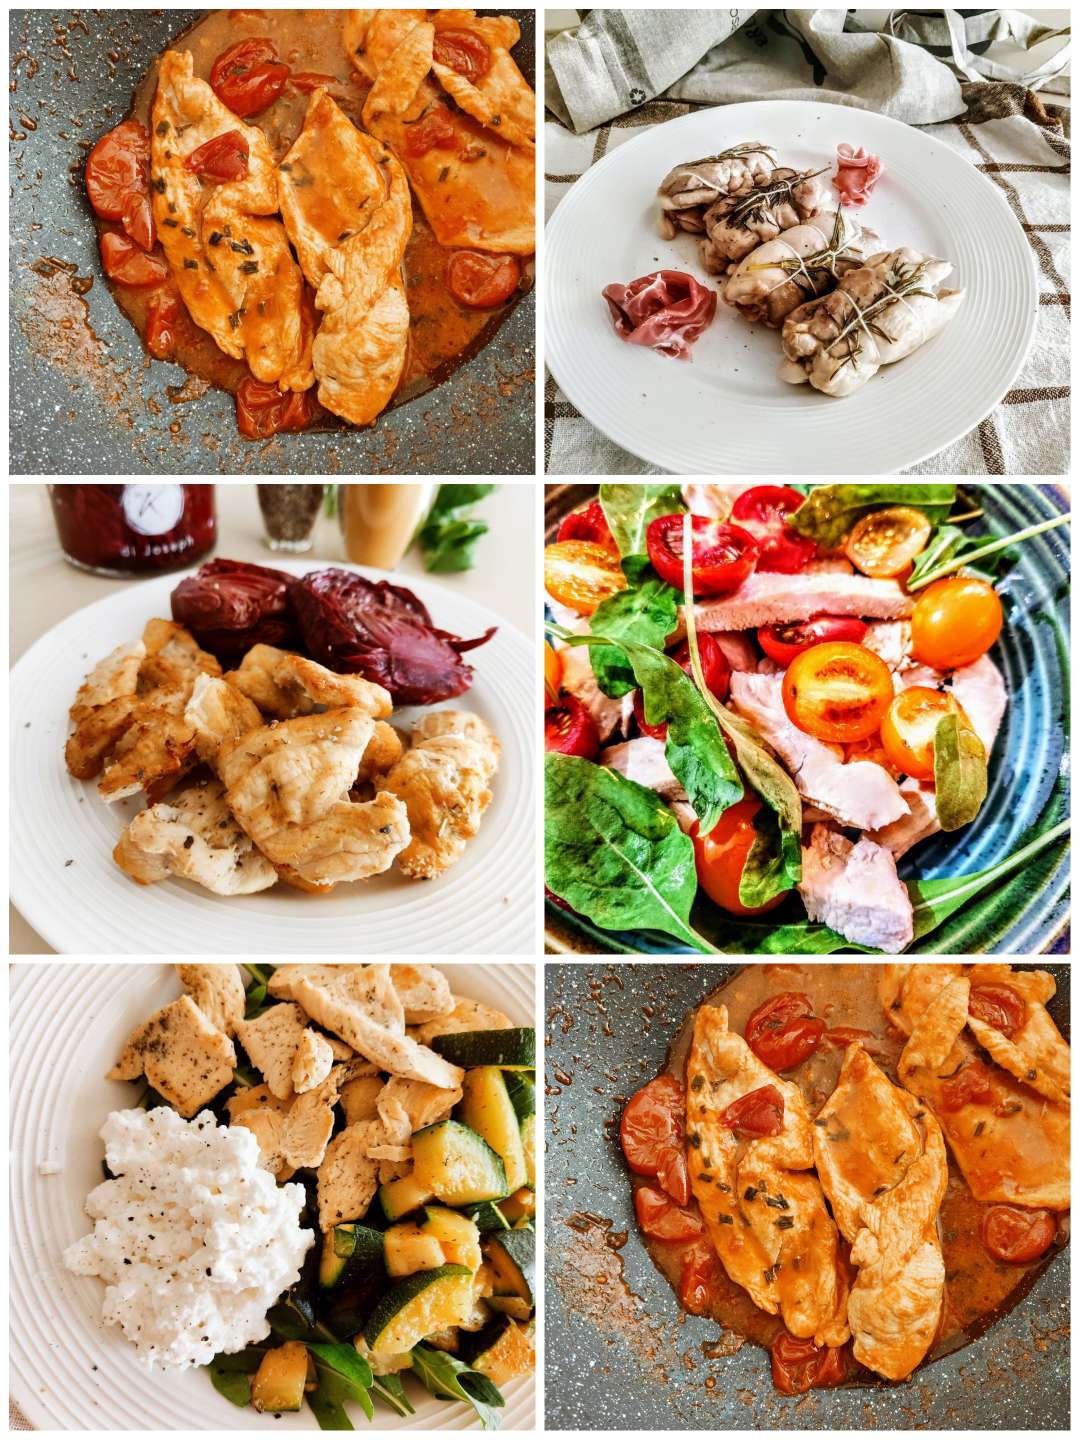 Ricette low carb e chetogeniche con pollo: se siete alla ricerca di opzioni deliziose e salutari per inserire il petto di pollo nella vostra dieta a basso contenuto di carboidrati, siete nel posto giusto.